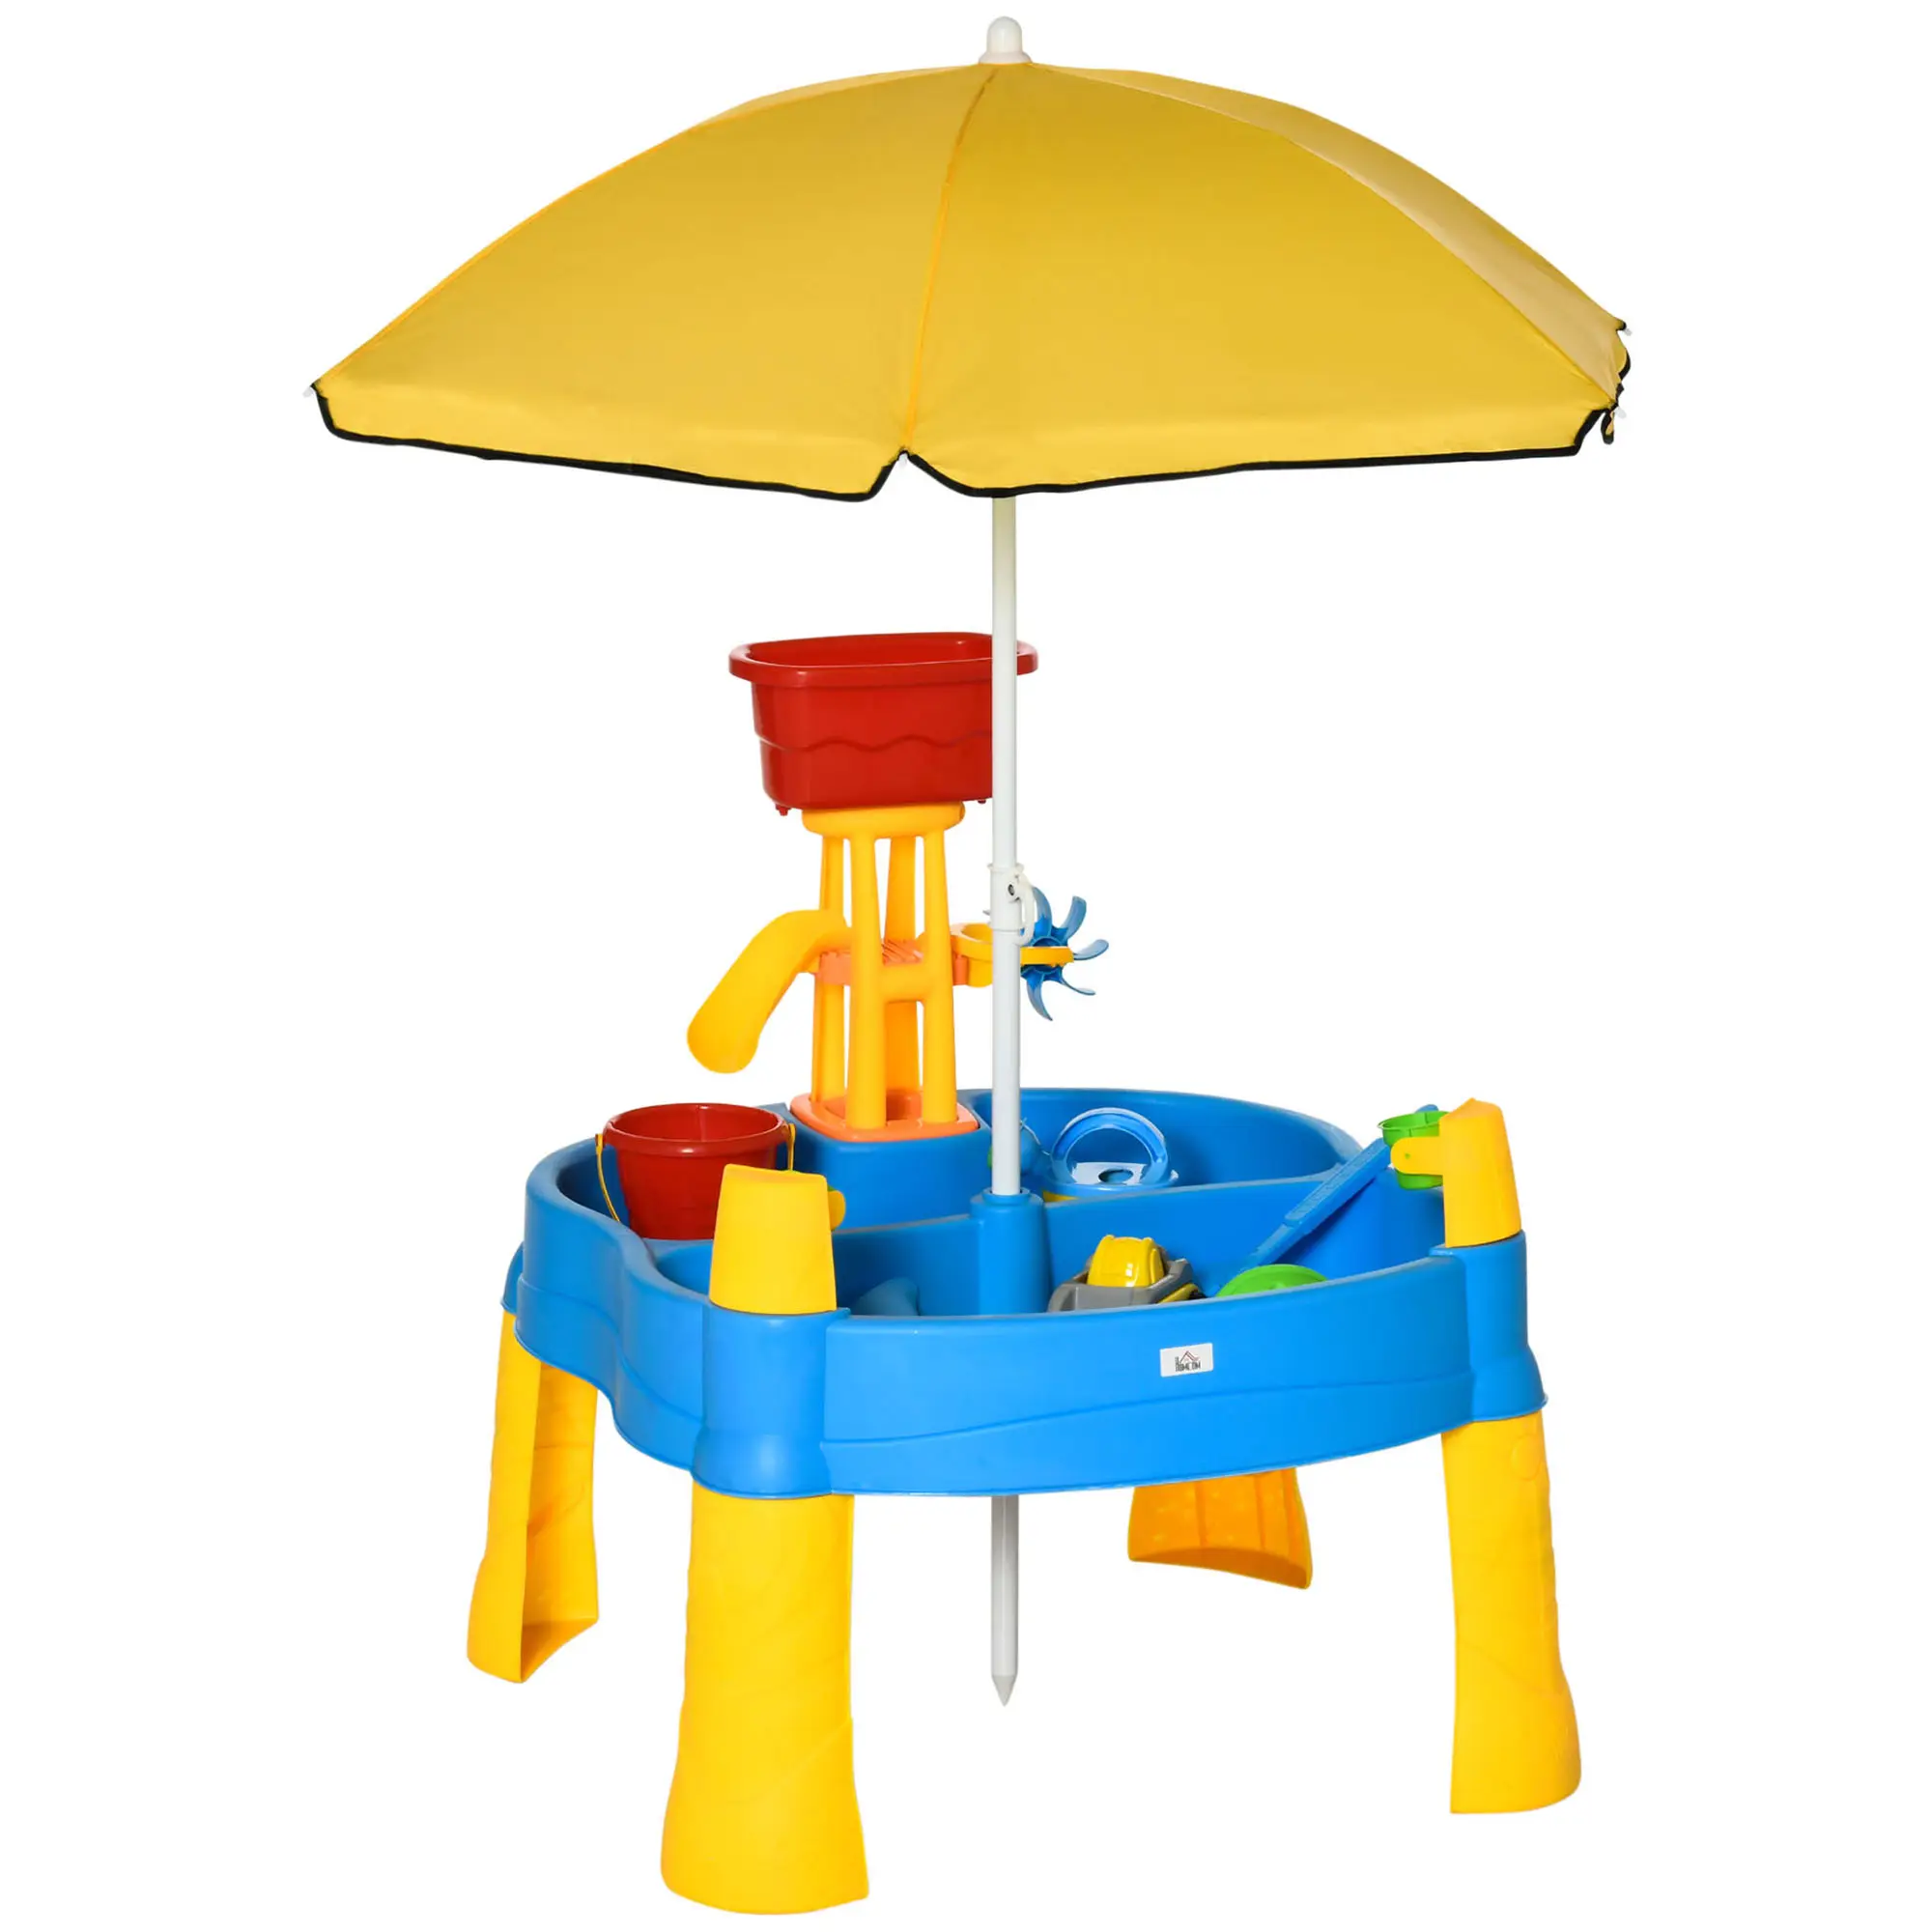 Sandspielzeug mit Sonnenschirm 343-046